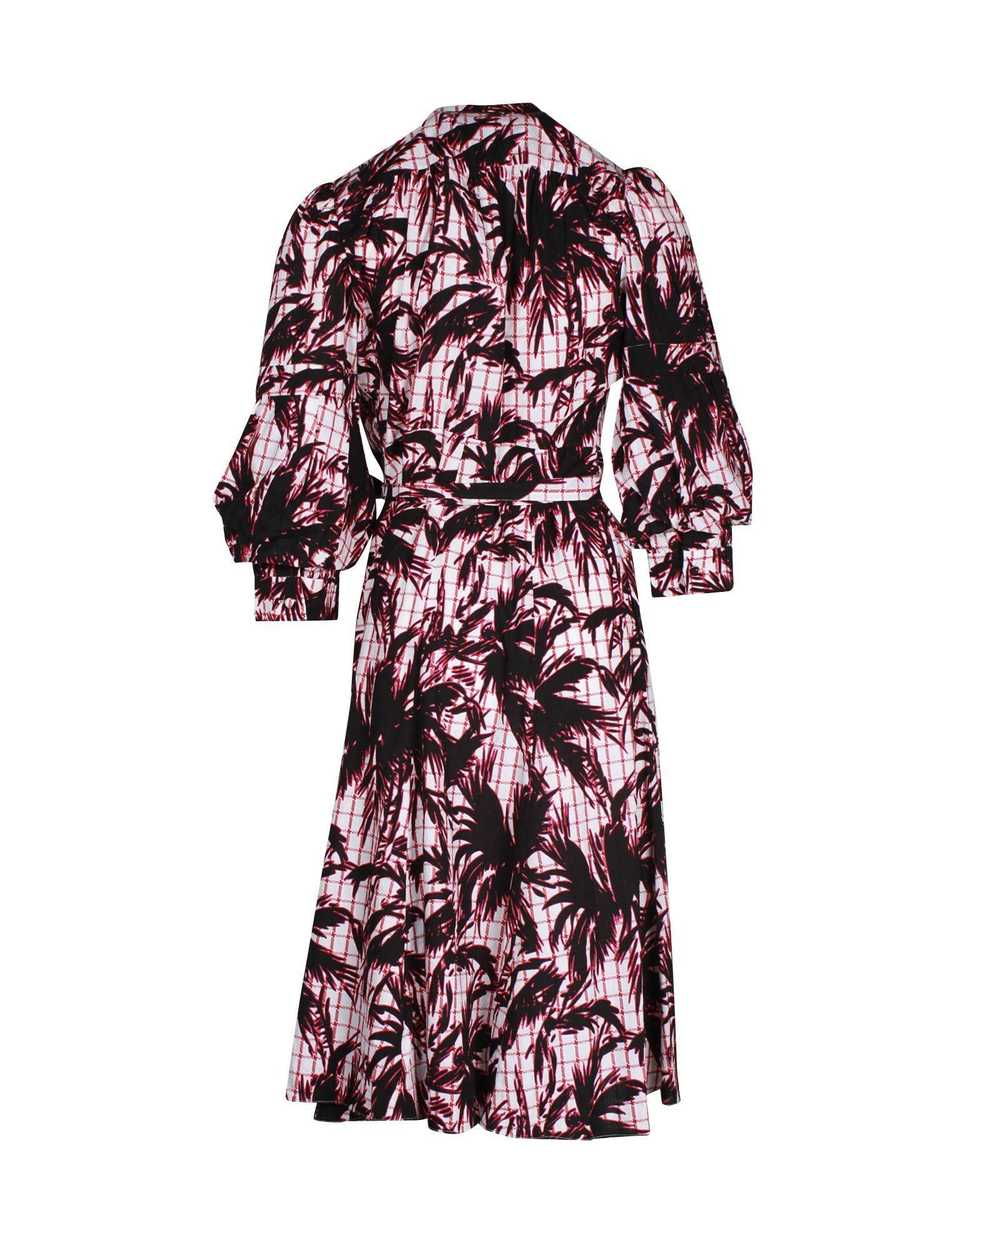 Diane von Furstenberg Print Wrap Dress - image 3